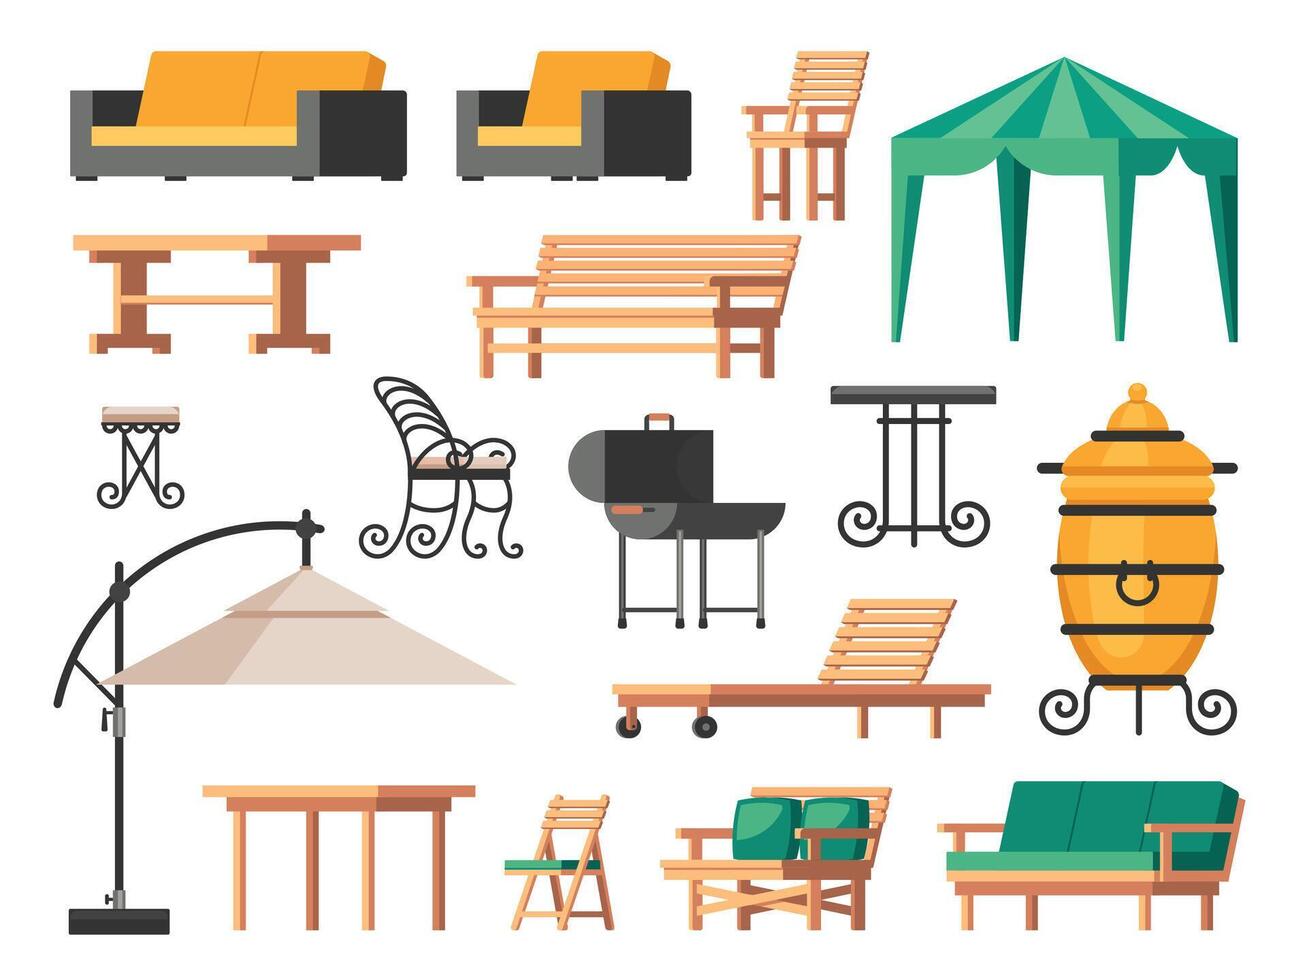 patio mueble. verano terraza silla mesa sofá paraguas, jardín y veranda salón íconos con patio interior parilla parrilla. vector aislado conjunto